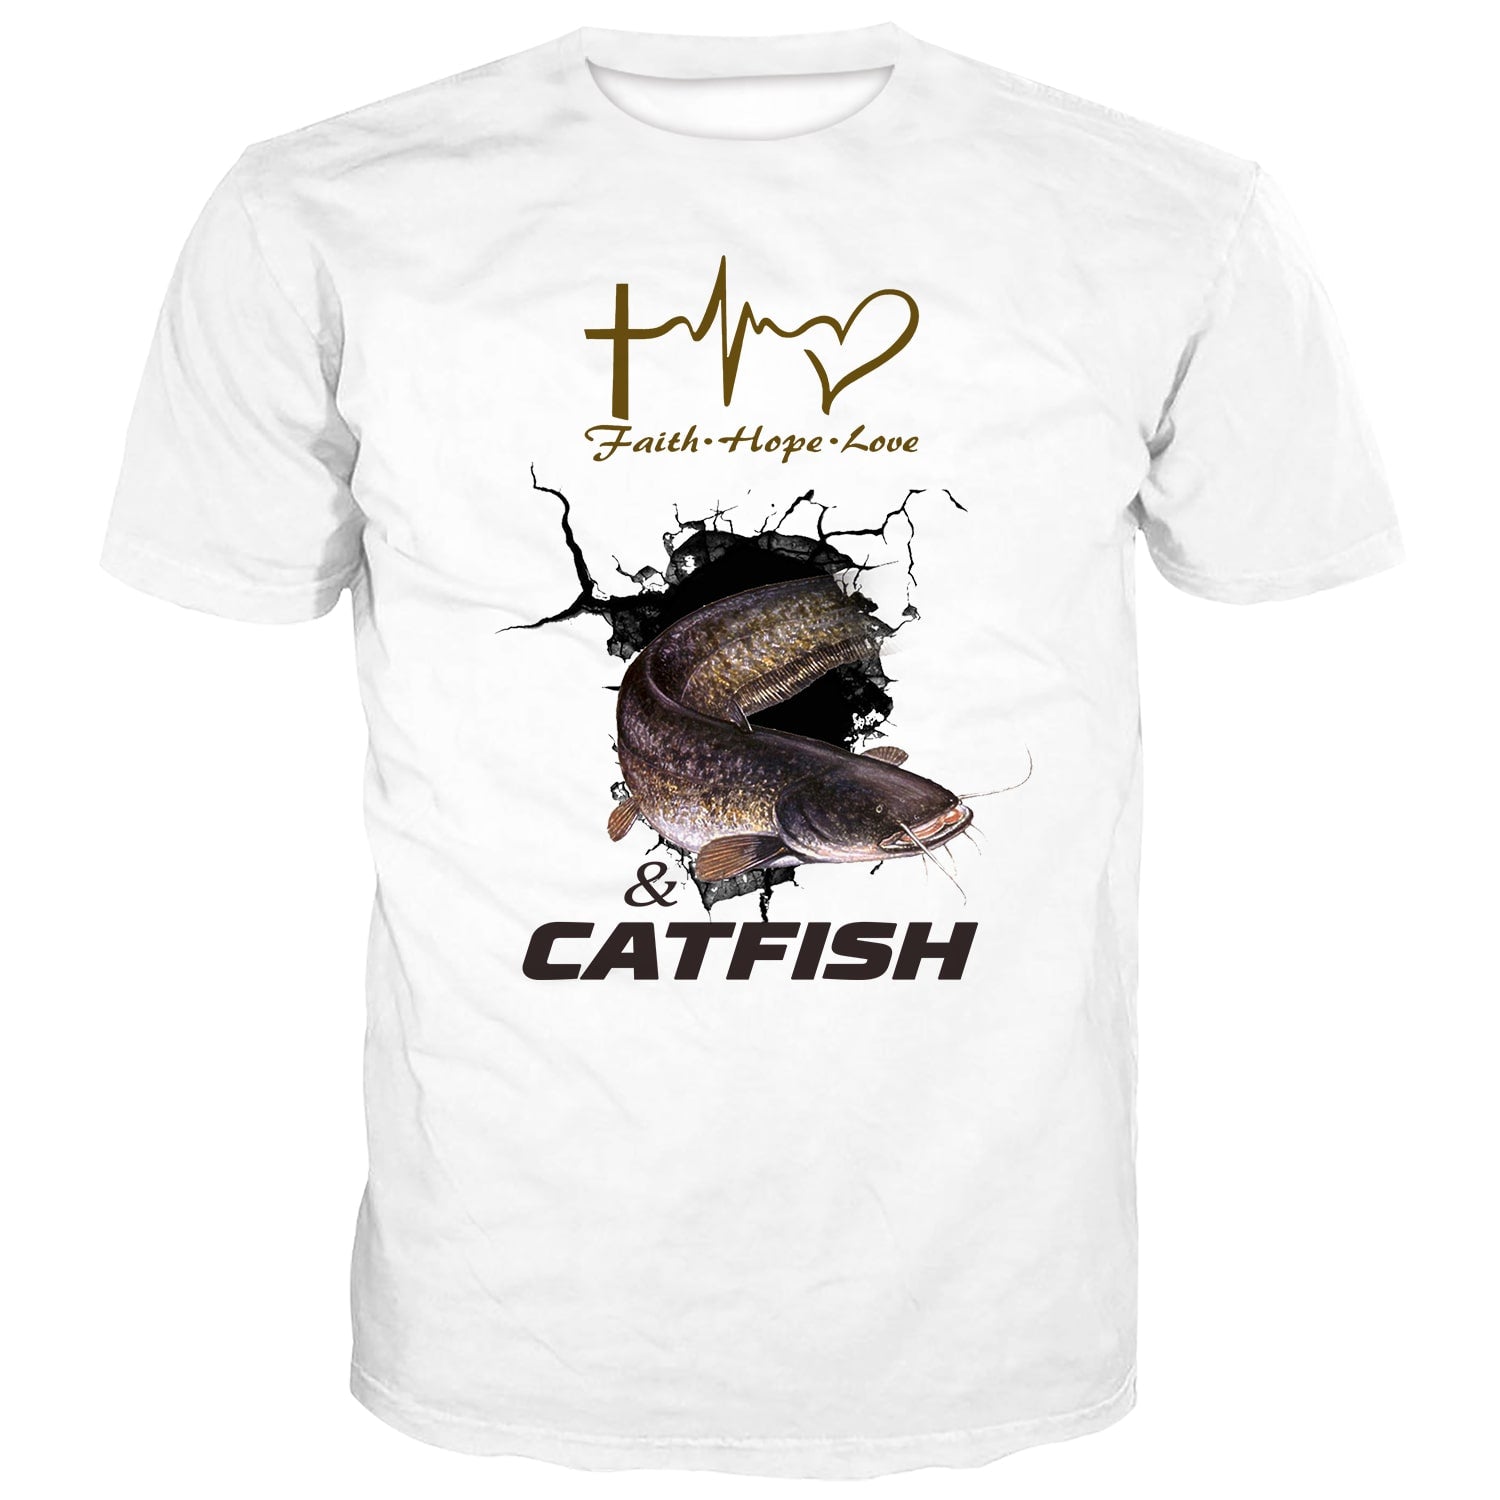 Catfish Fisher Shirt